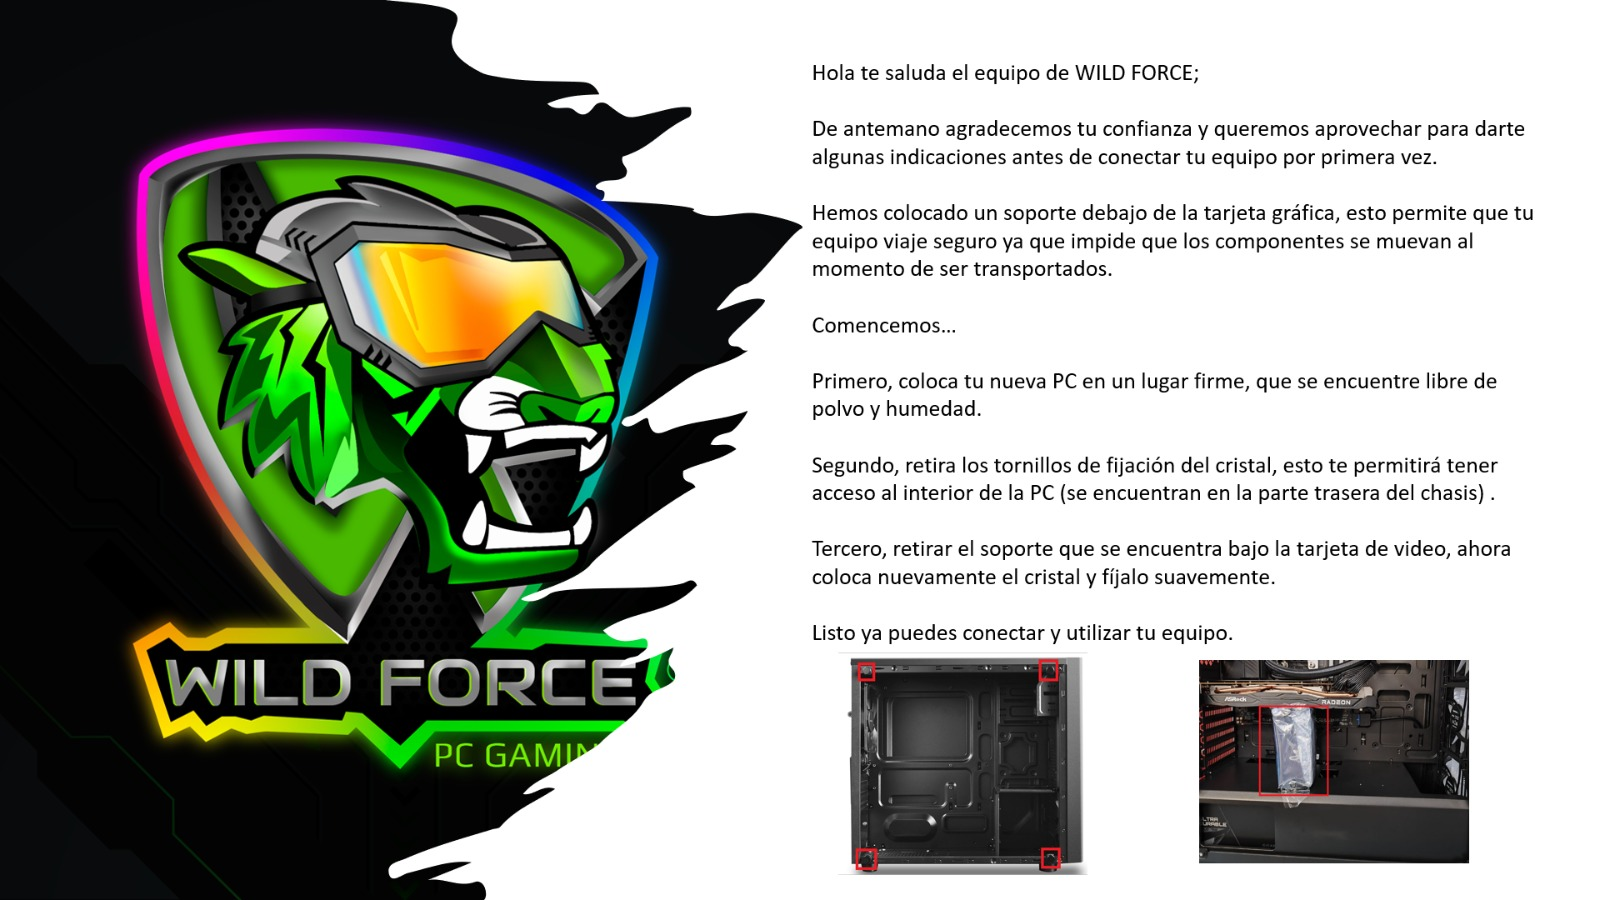 PC Gamer Wild Force CREATOR AMD Ryzen 9 SSD 960GB + HDD 2TB 32GB Ram Windows 10